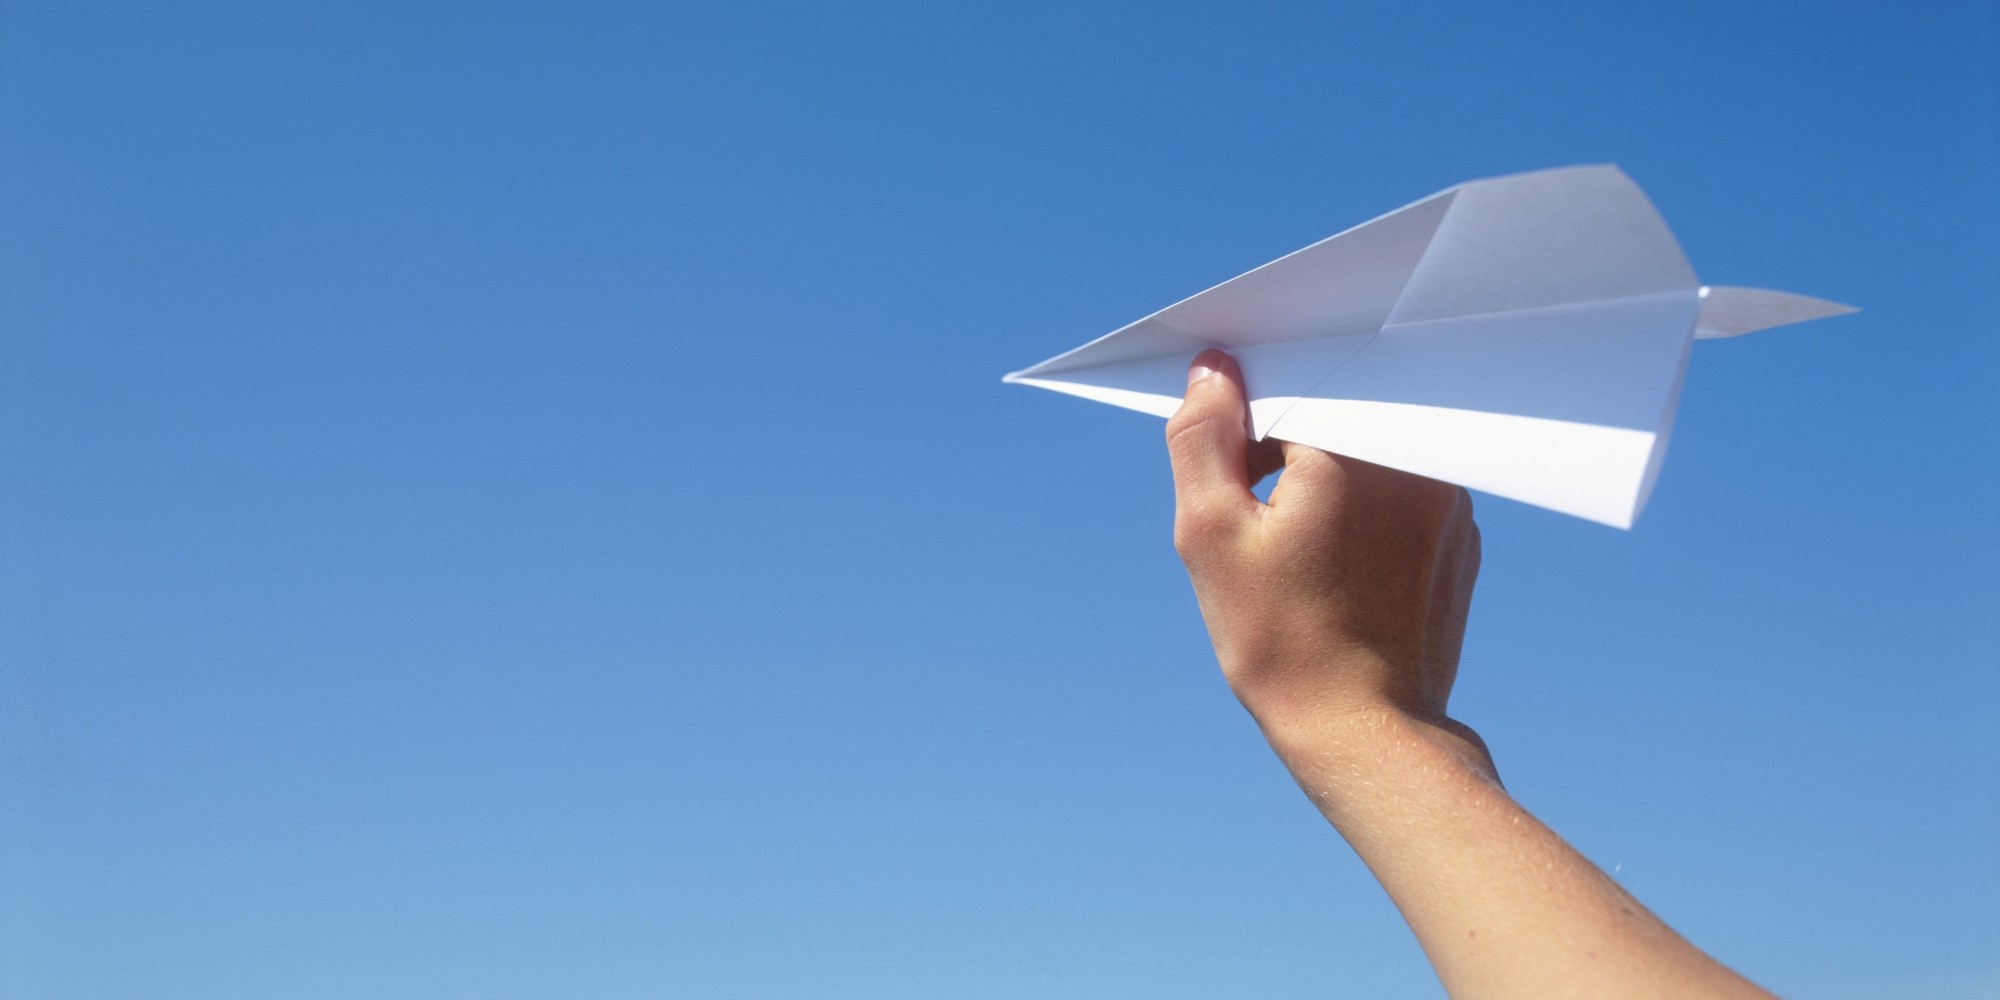 Запорожские школьники запустили огромный бумажный самолет с недостроенных мостов высотой в 55 метров (ФОТО, ВИДЕО)